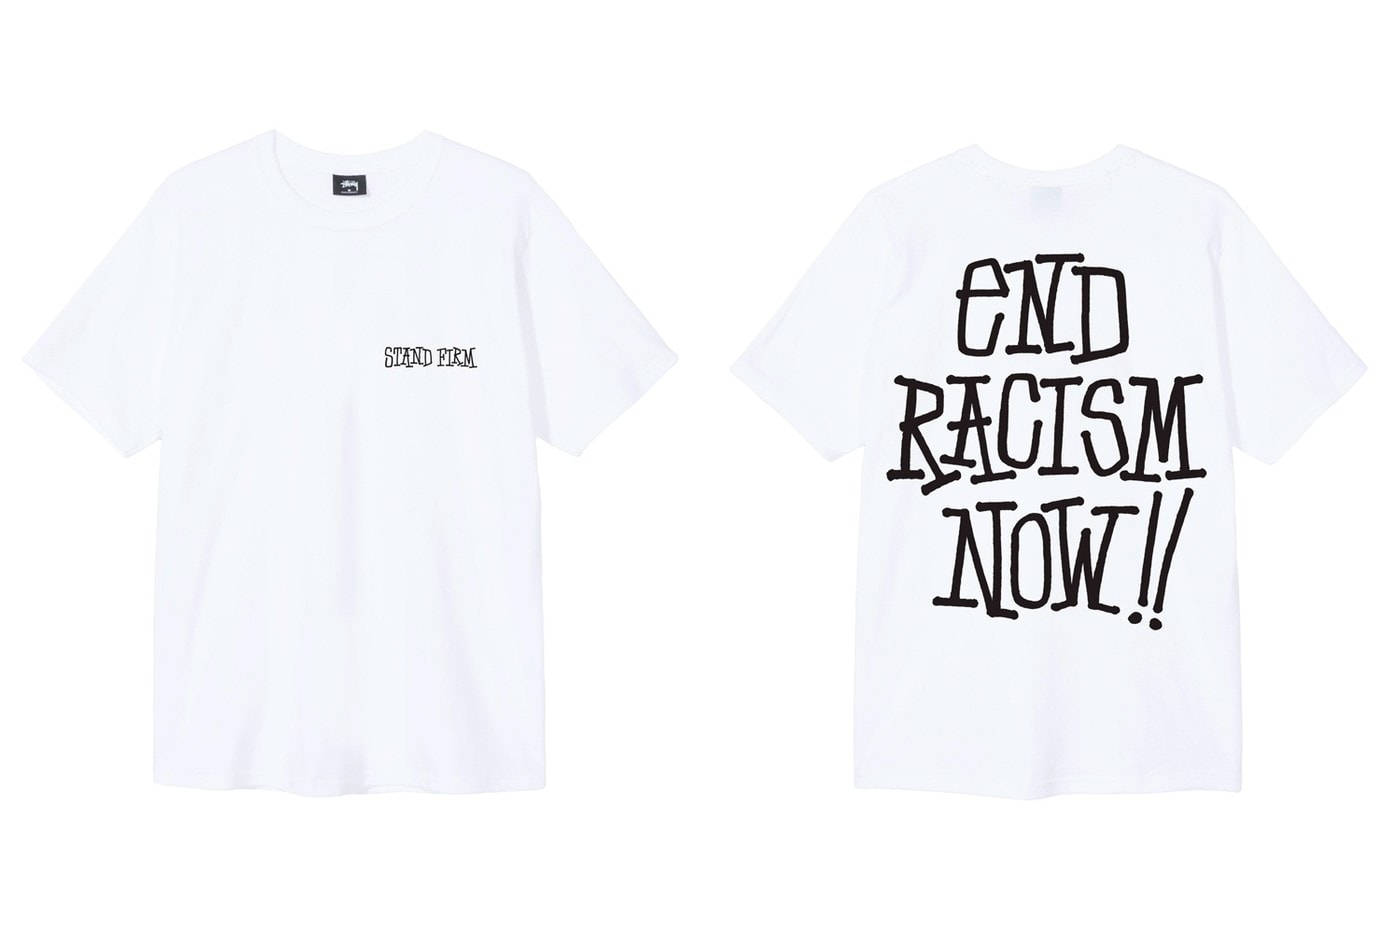 스투시, 구조적 인종차별에 반대하는 뜻을 담은 티셔츠 출시